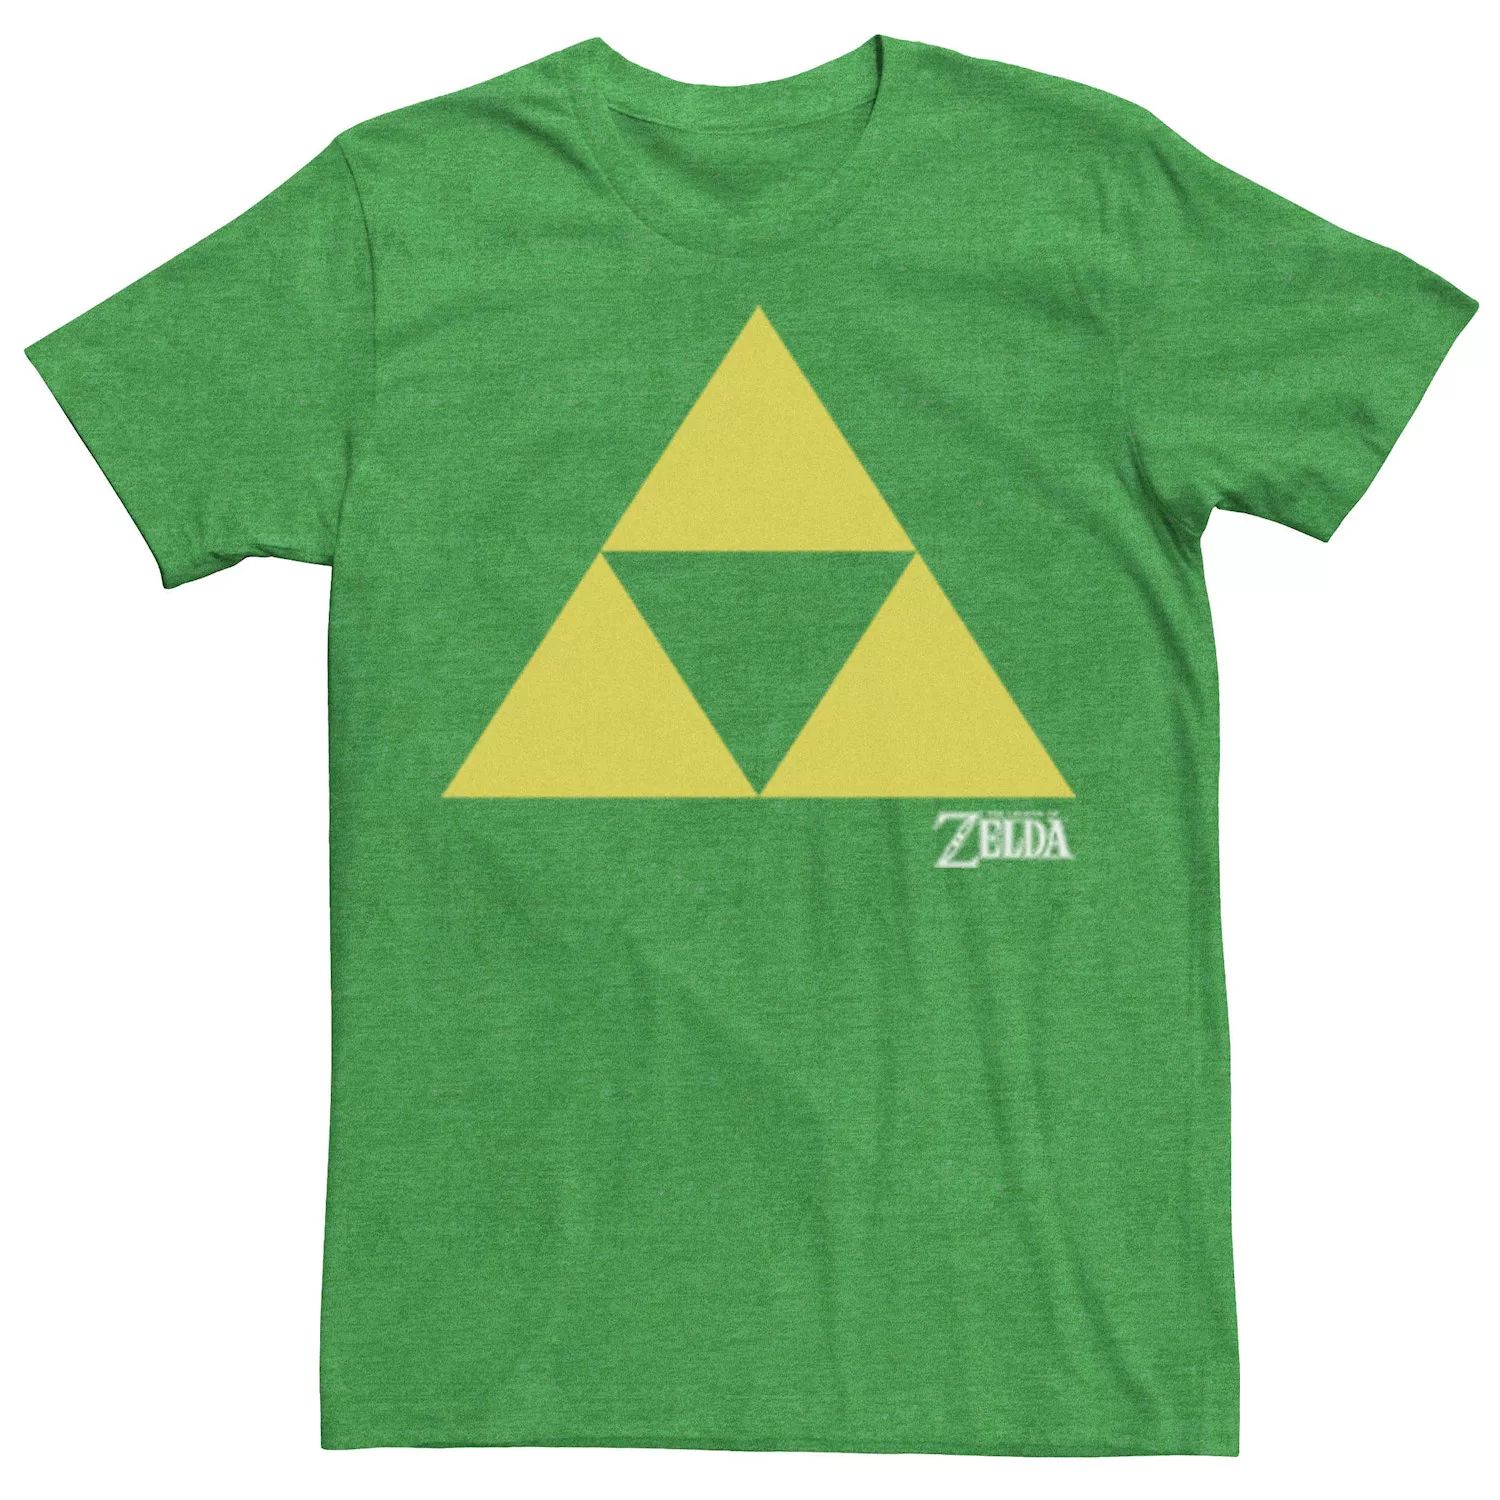 Мужская классическая футболка Nintendo Legend of Zelda Iconic Triforce Licensed Character мужская толстовка с капюшоном nintendo legend of zelda iconic triforce licensed character